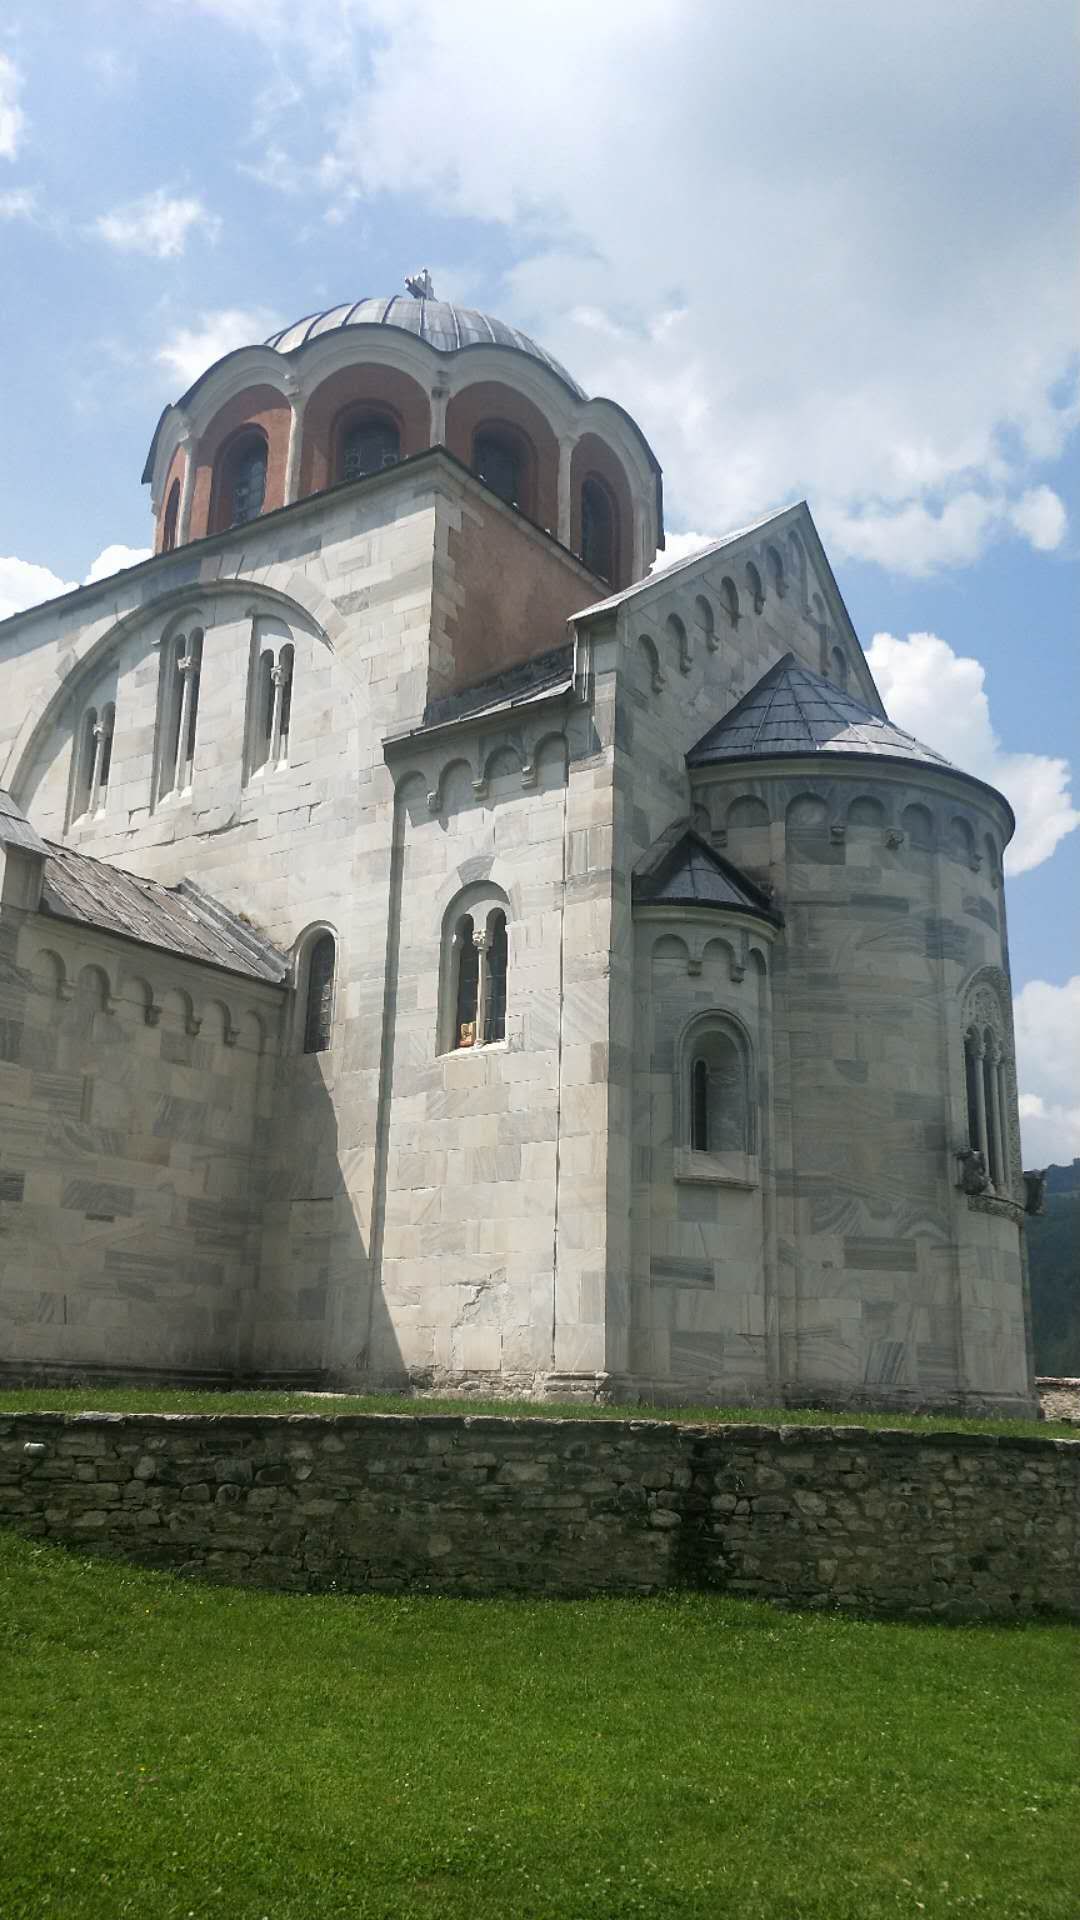 斯图代尼查修道院   12世纪的建筑。修道院本身是维修过的。 但护墙多为原状。    入了世界文化遗